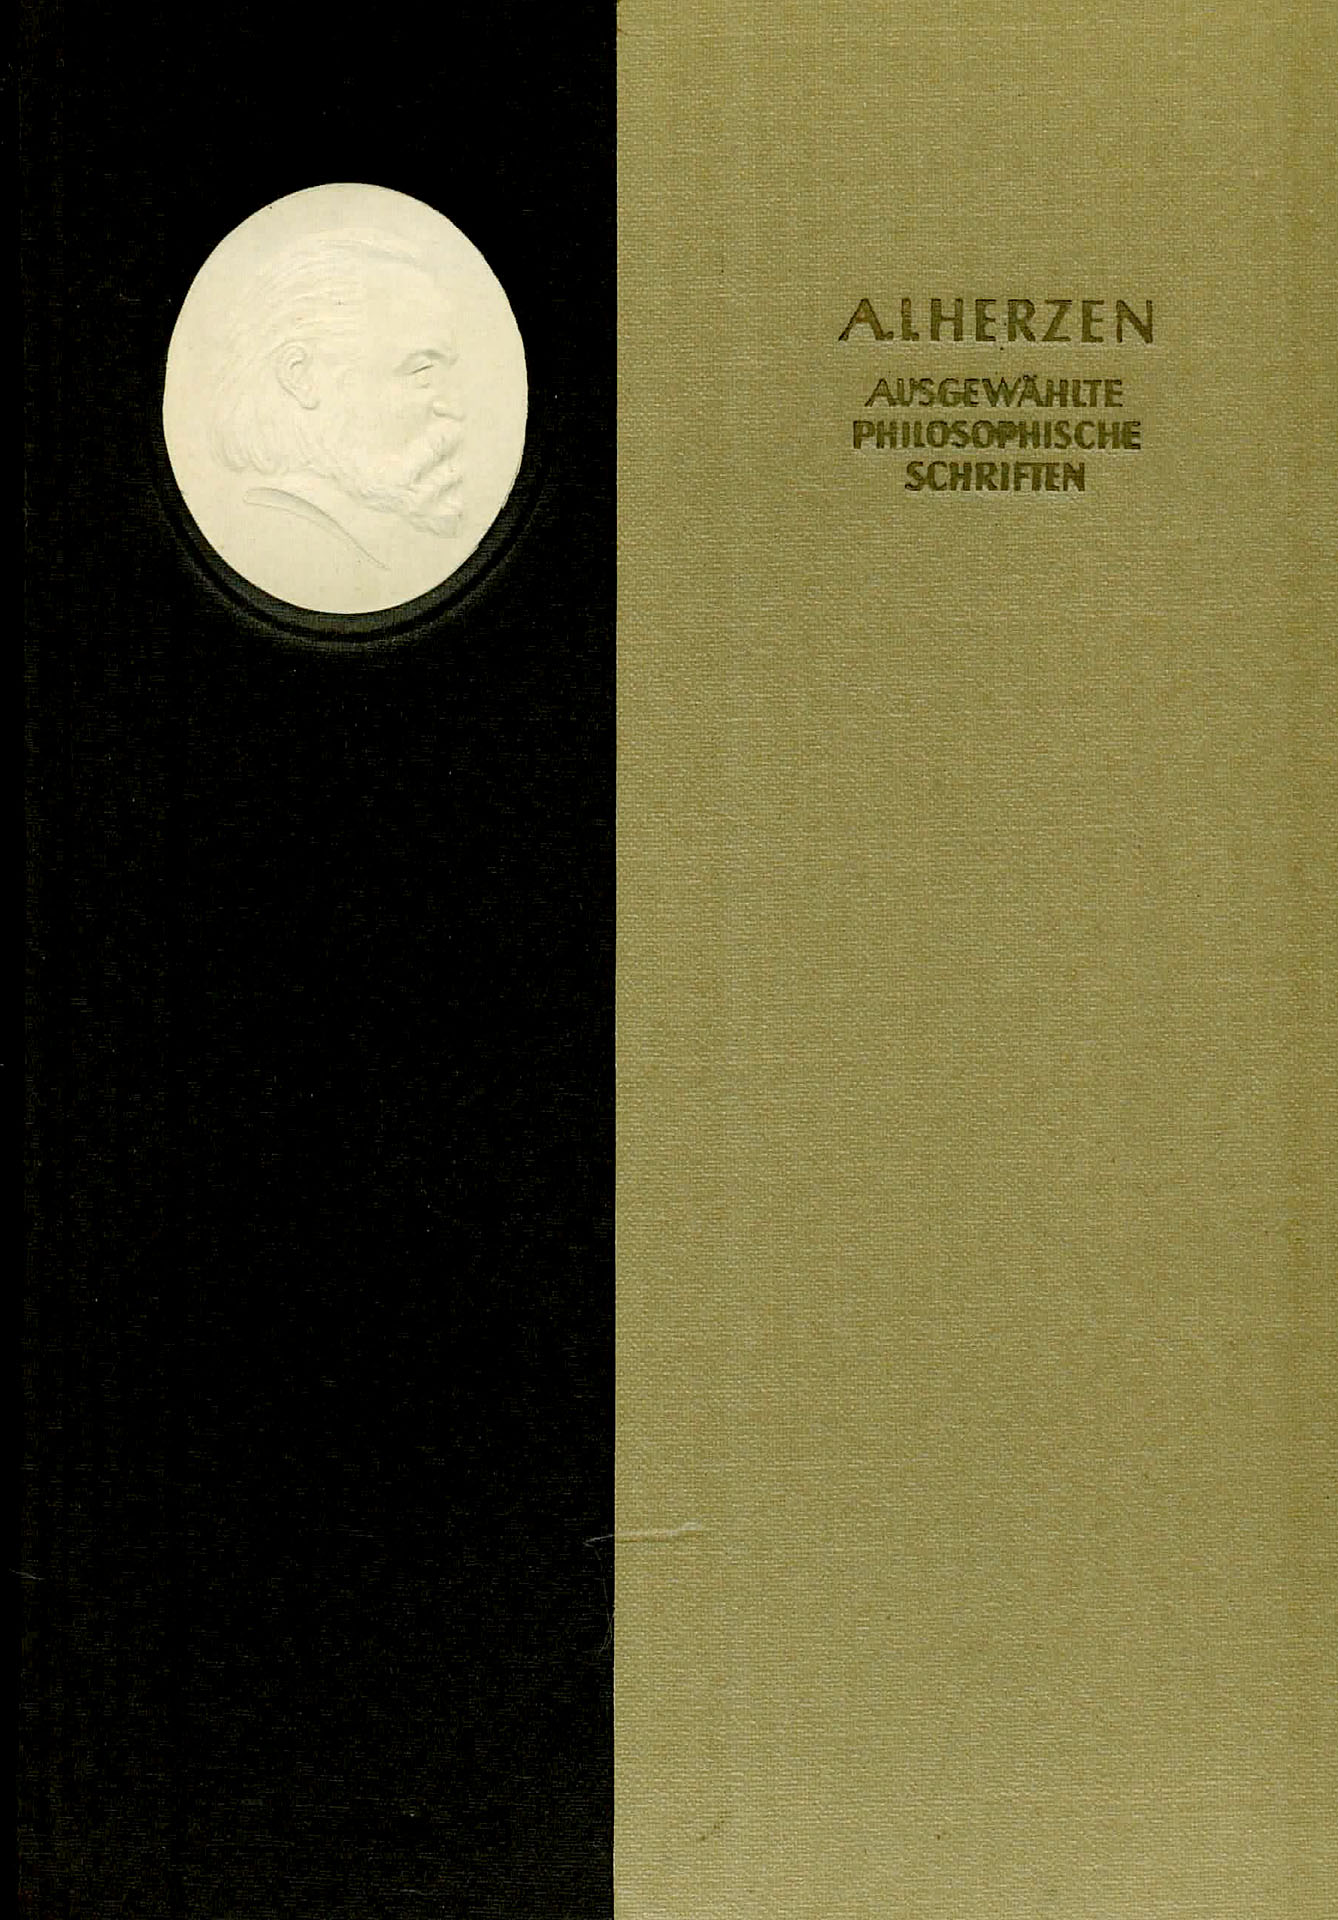 Ausgewählte Philosophische Schriften - Herzen, A. I.